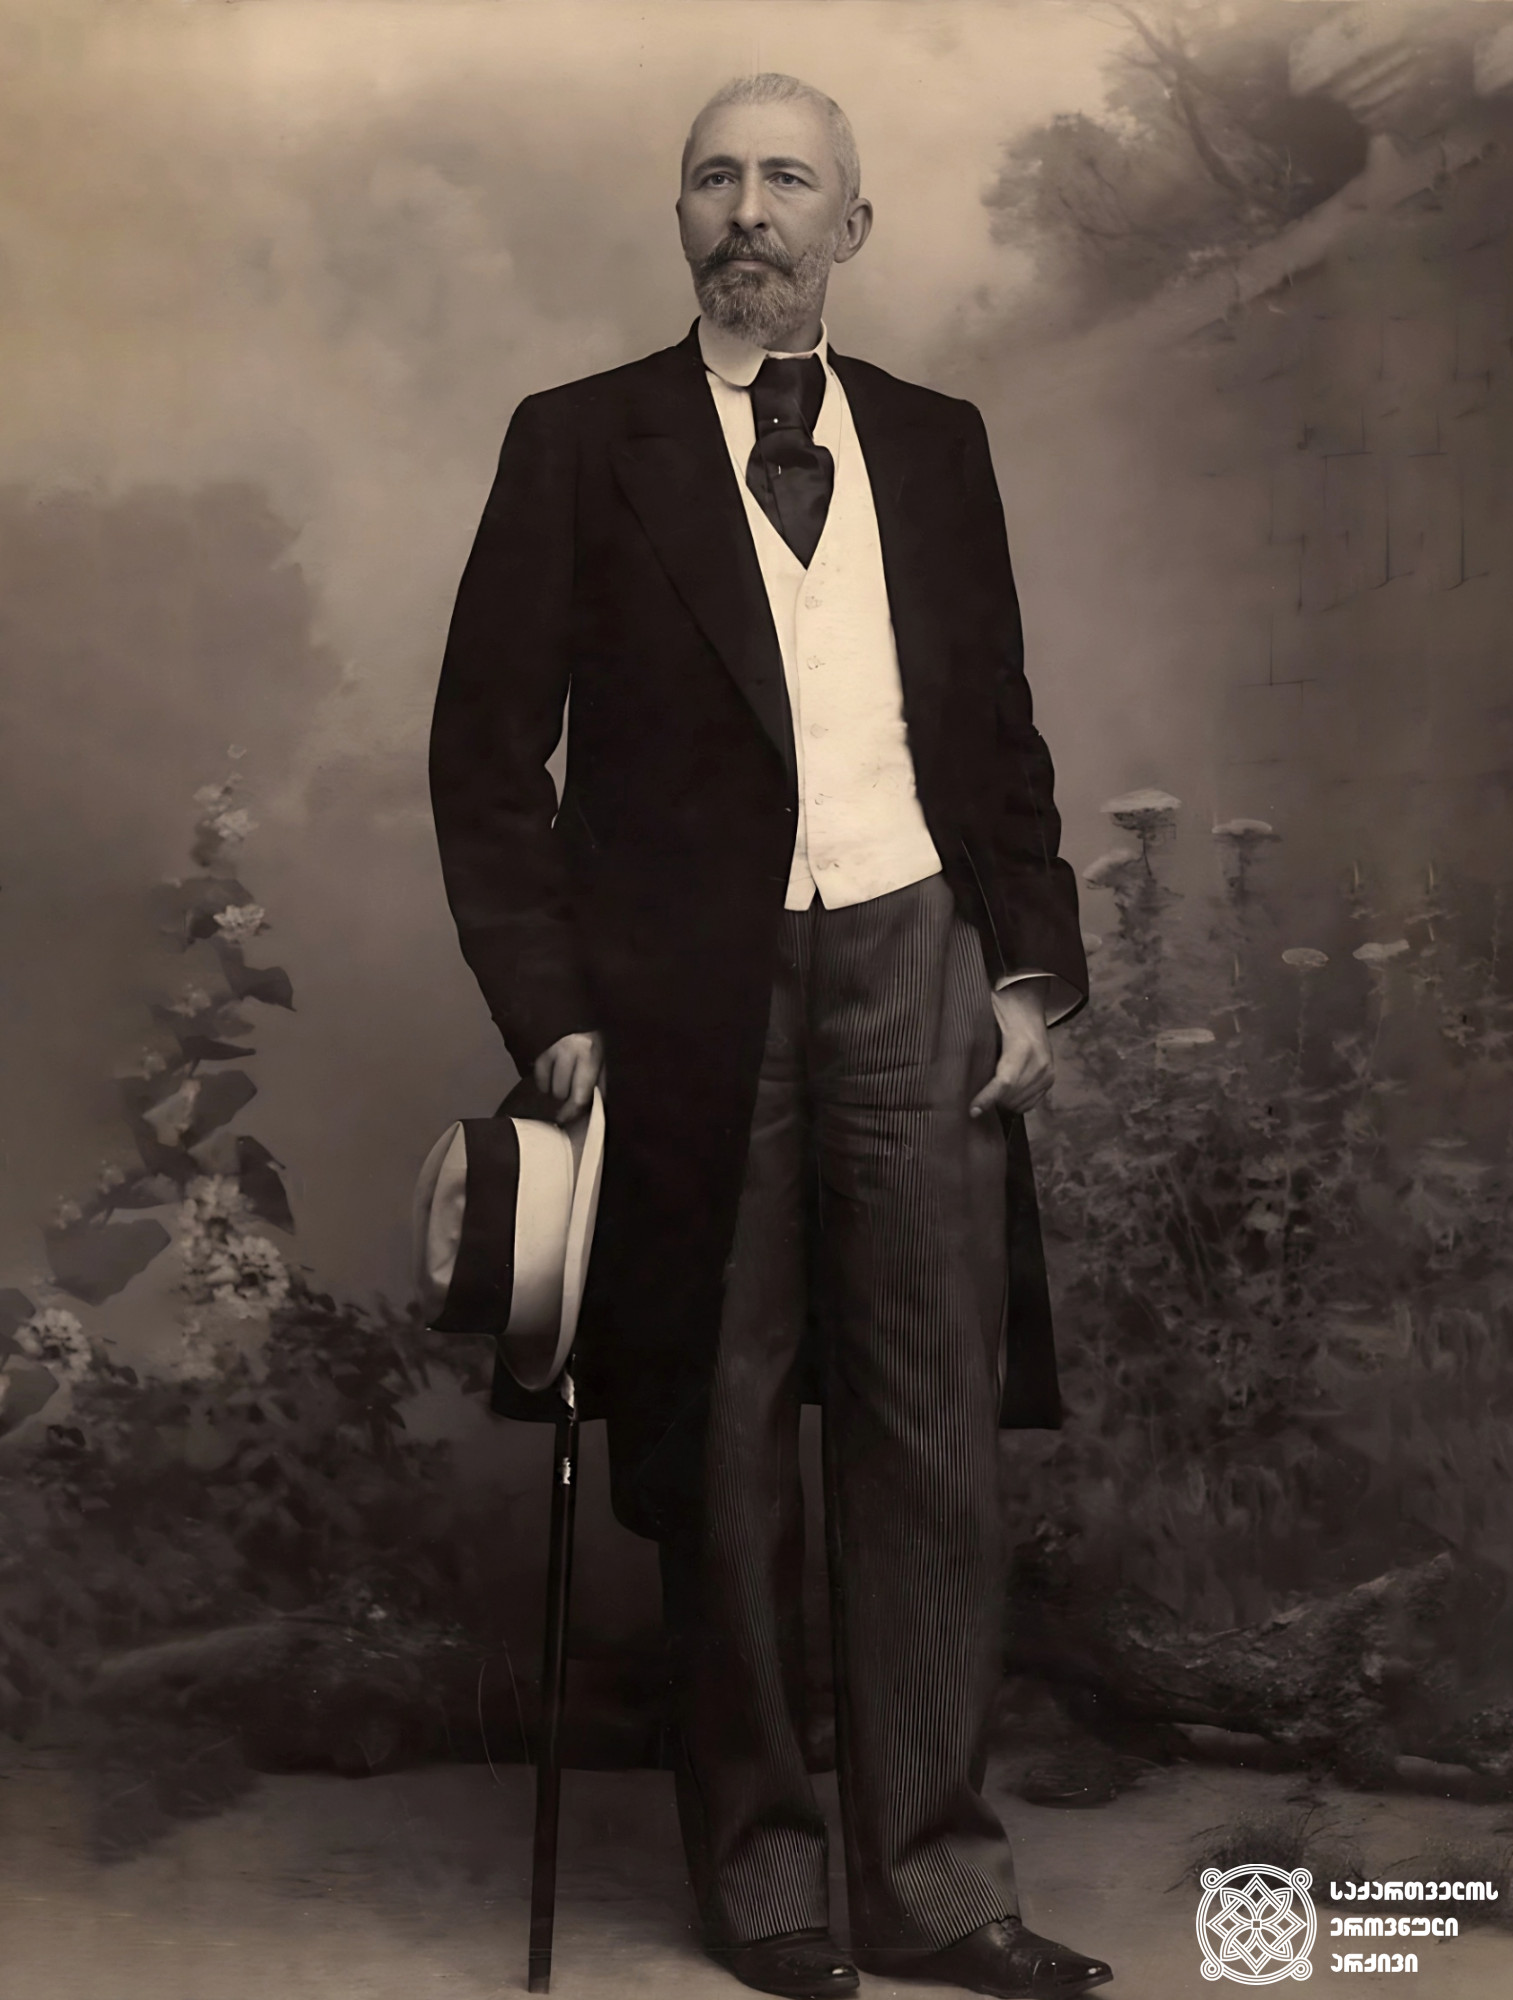 გიორგი შარვაშიძე (1846-1918) - აფხაზეთის უკანასკნელი მთავრის, მიხეილ შარვაშიძის შვილი; პოეტი, დრამატურგი, პუბლიცისტი, საზოგადო მოღვაწე <br>
Giorgi Sharvashidze (1846-1918) - the son of the last  governor of Abkhazia, Mikheil Sharvashidze; Poet, playwrighter, publicist, public figure